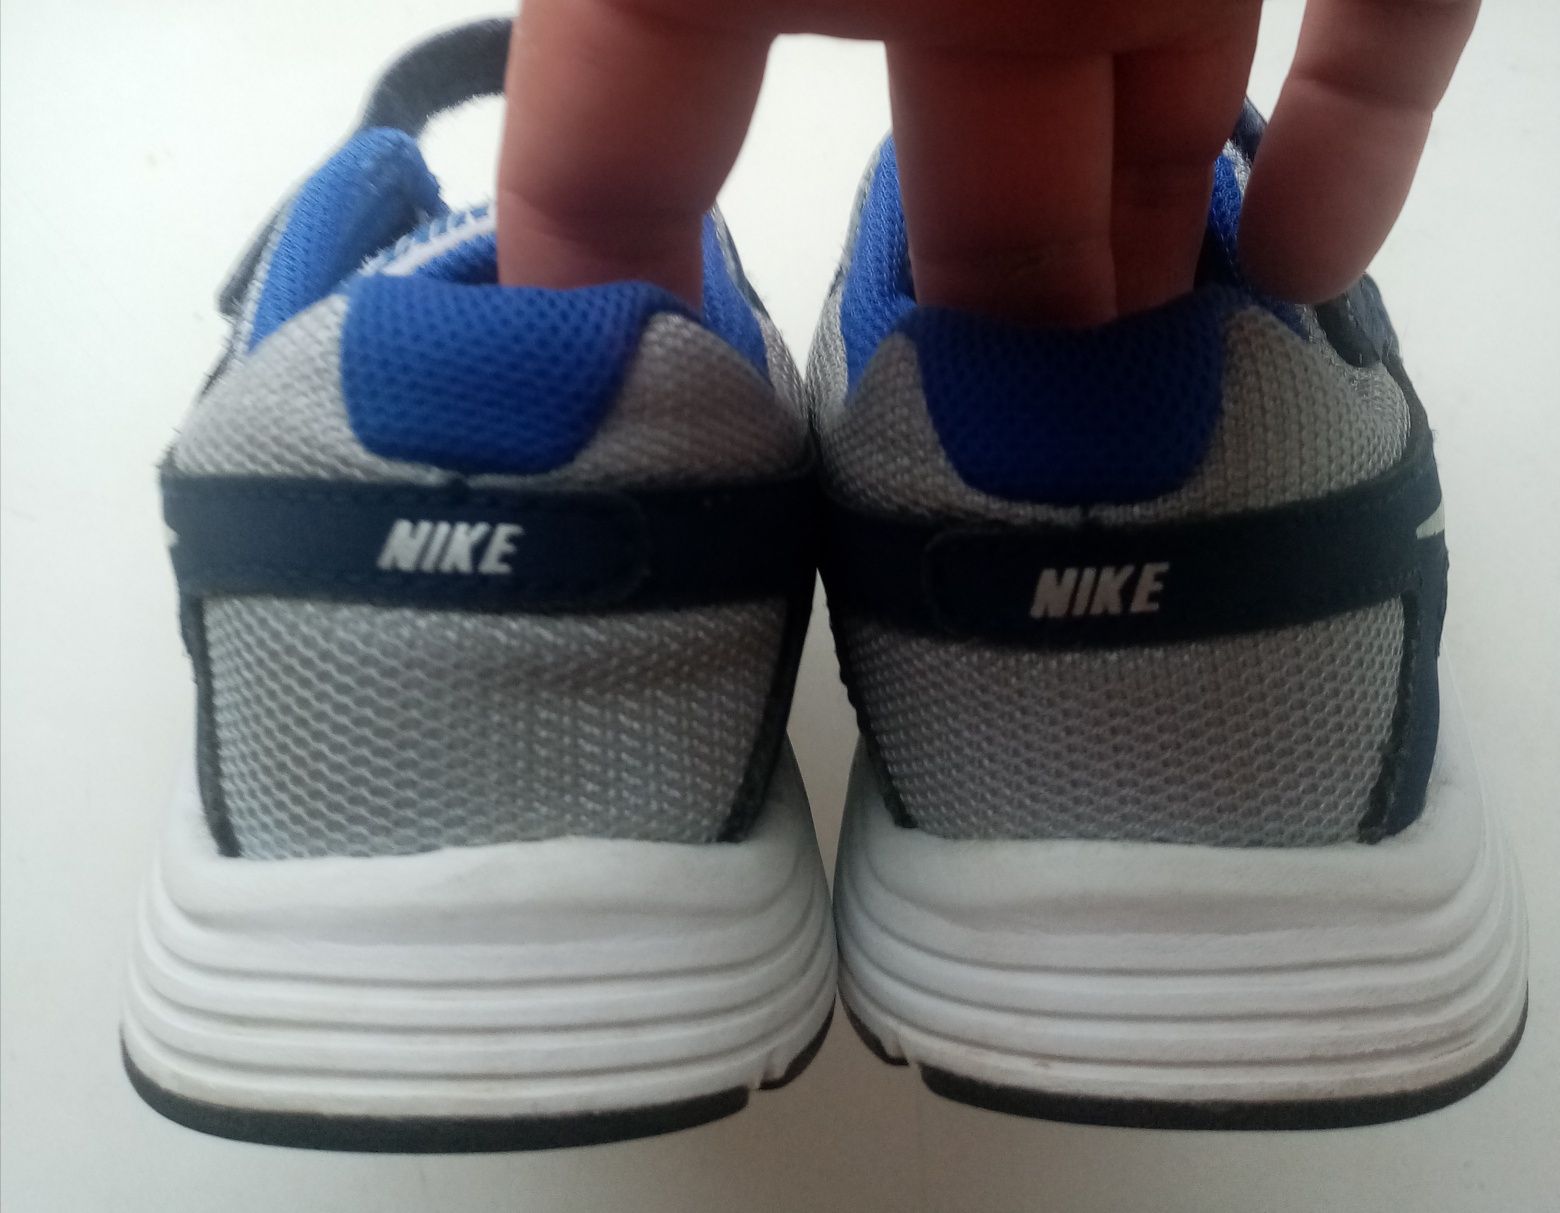 19,5-20 см. Детские кроссовки Nike REVOLUTION 2 (оригинал)